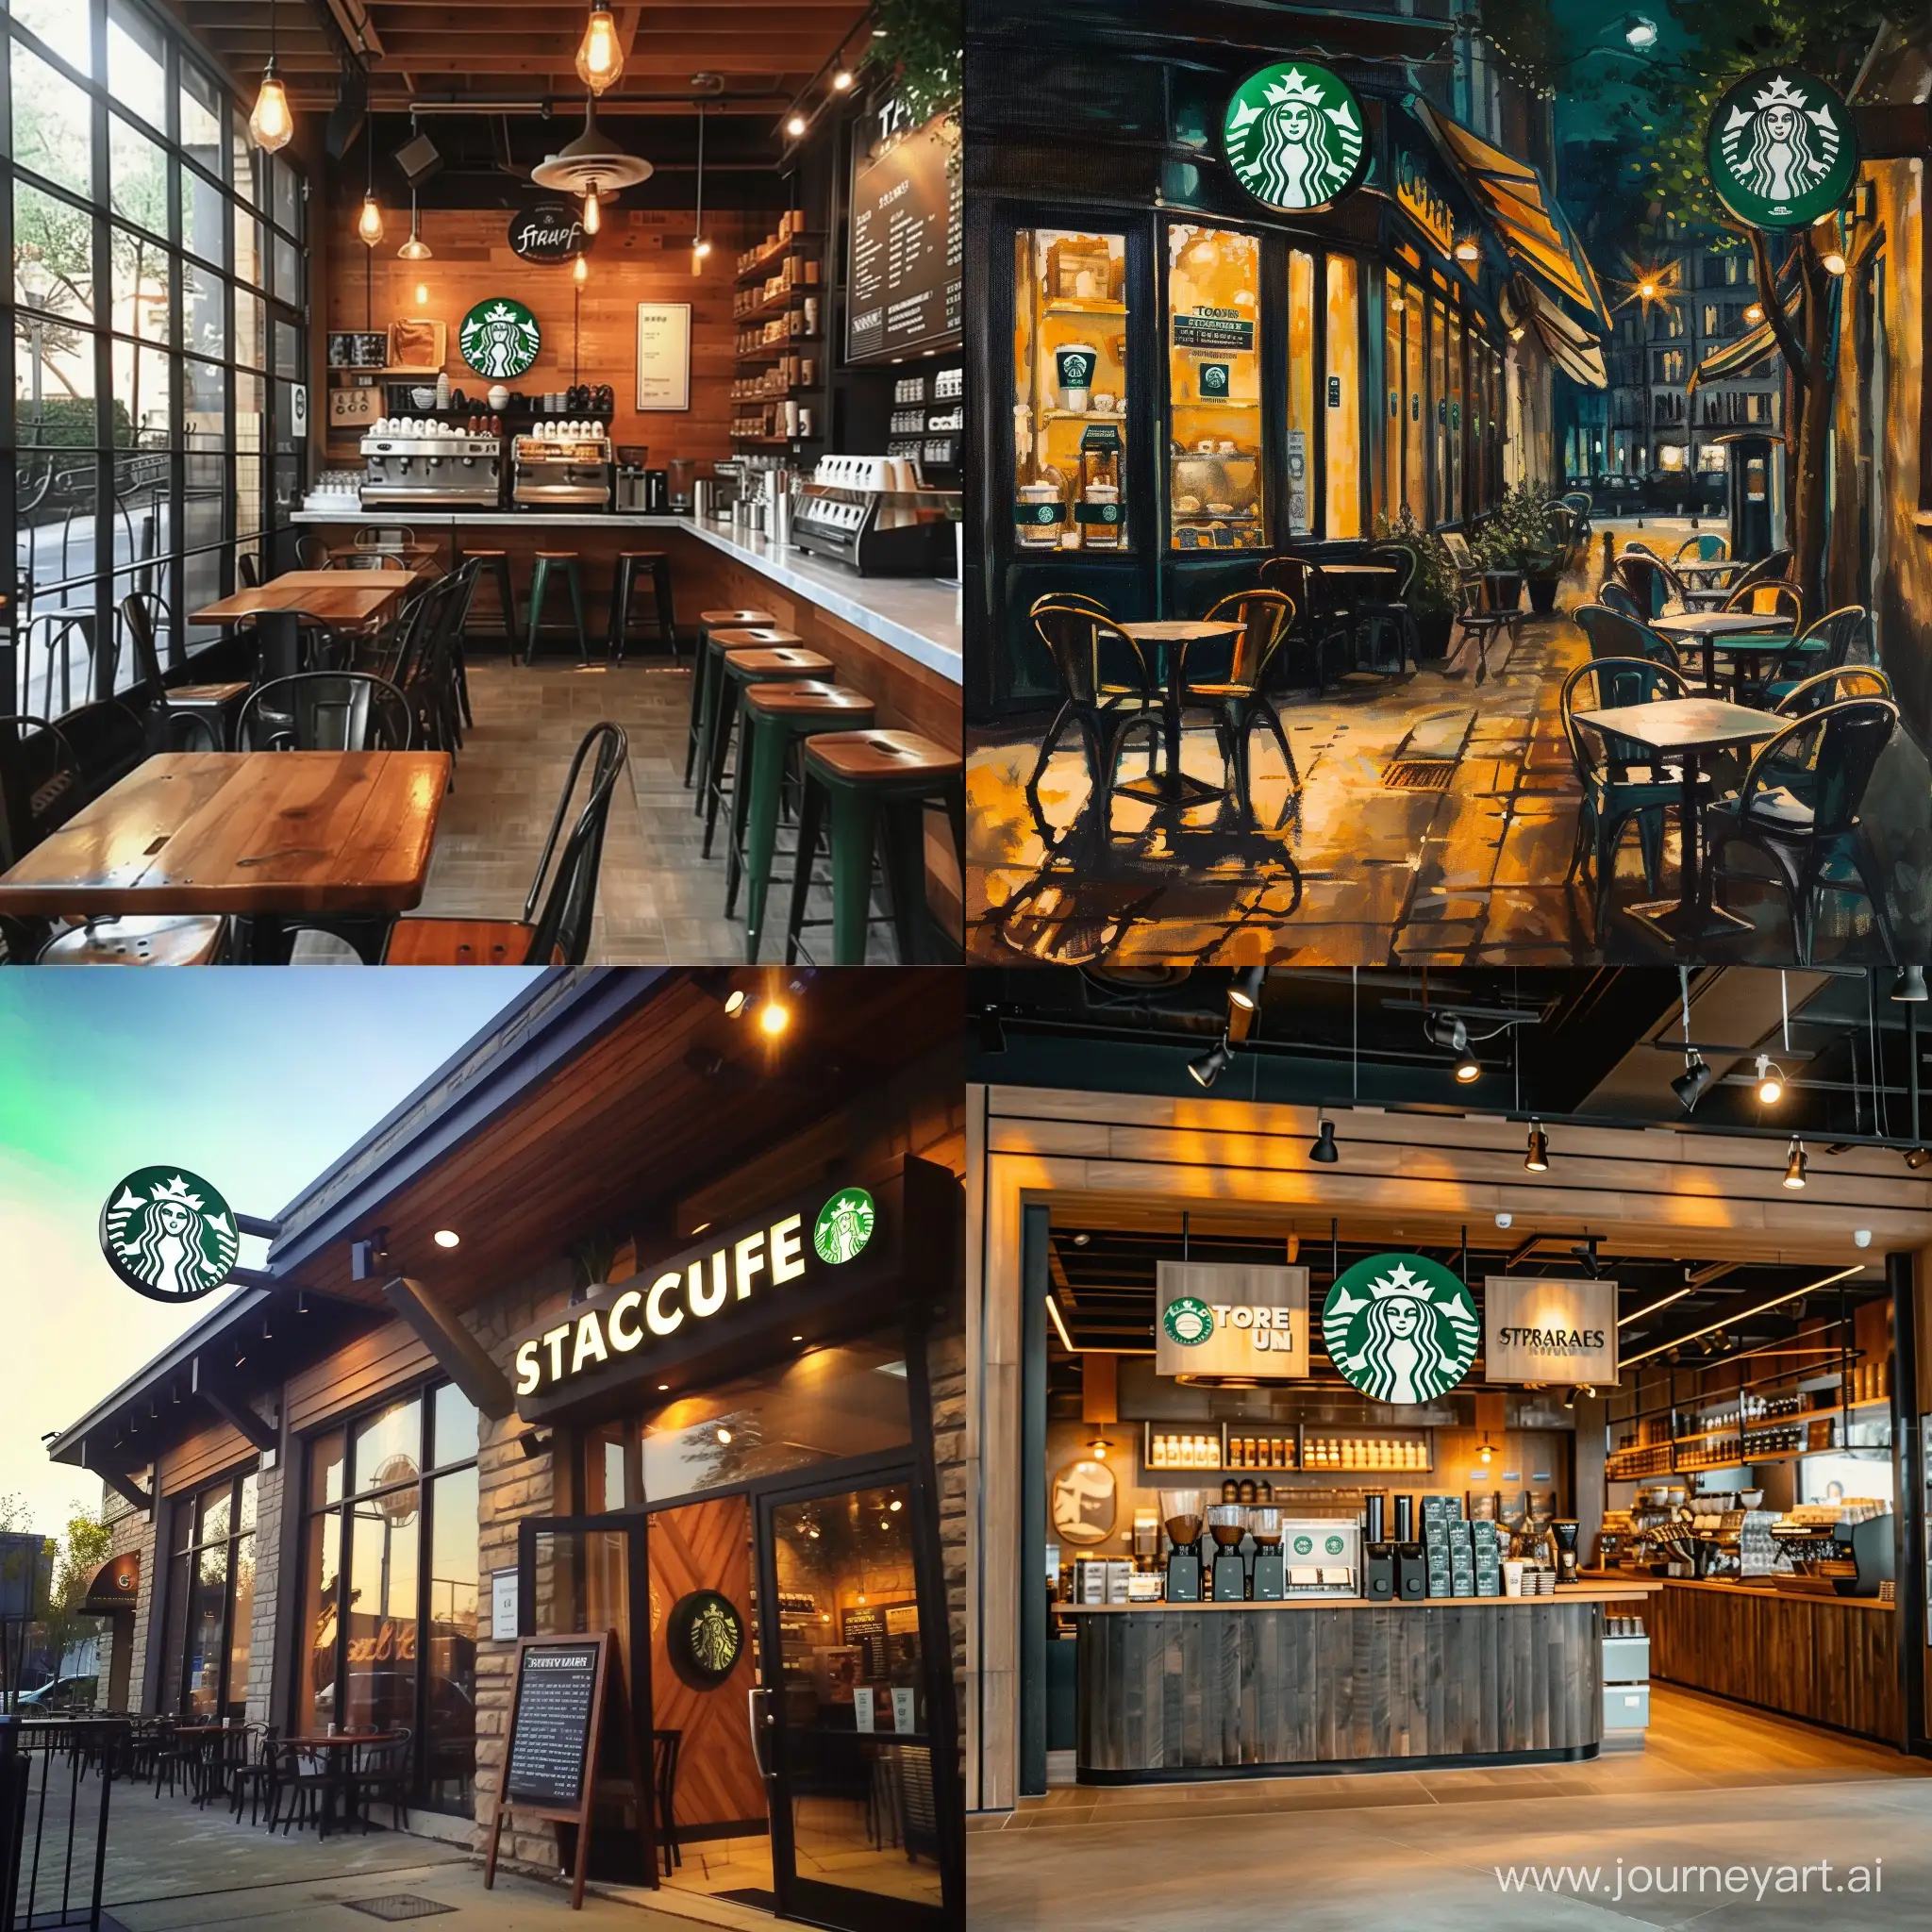 People-Enjoying-Coffee-at-Starbucks-Cafe